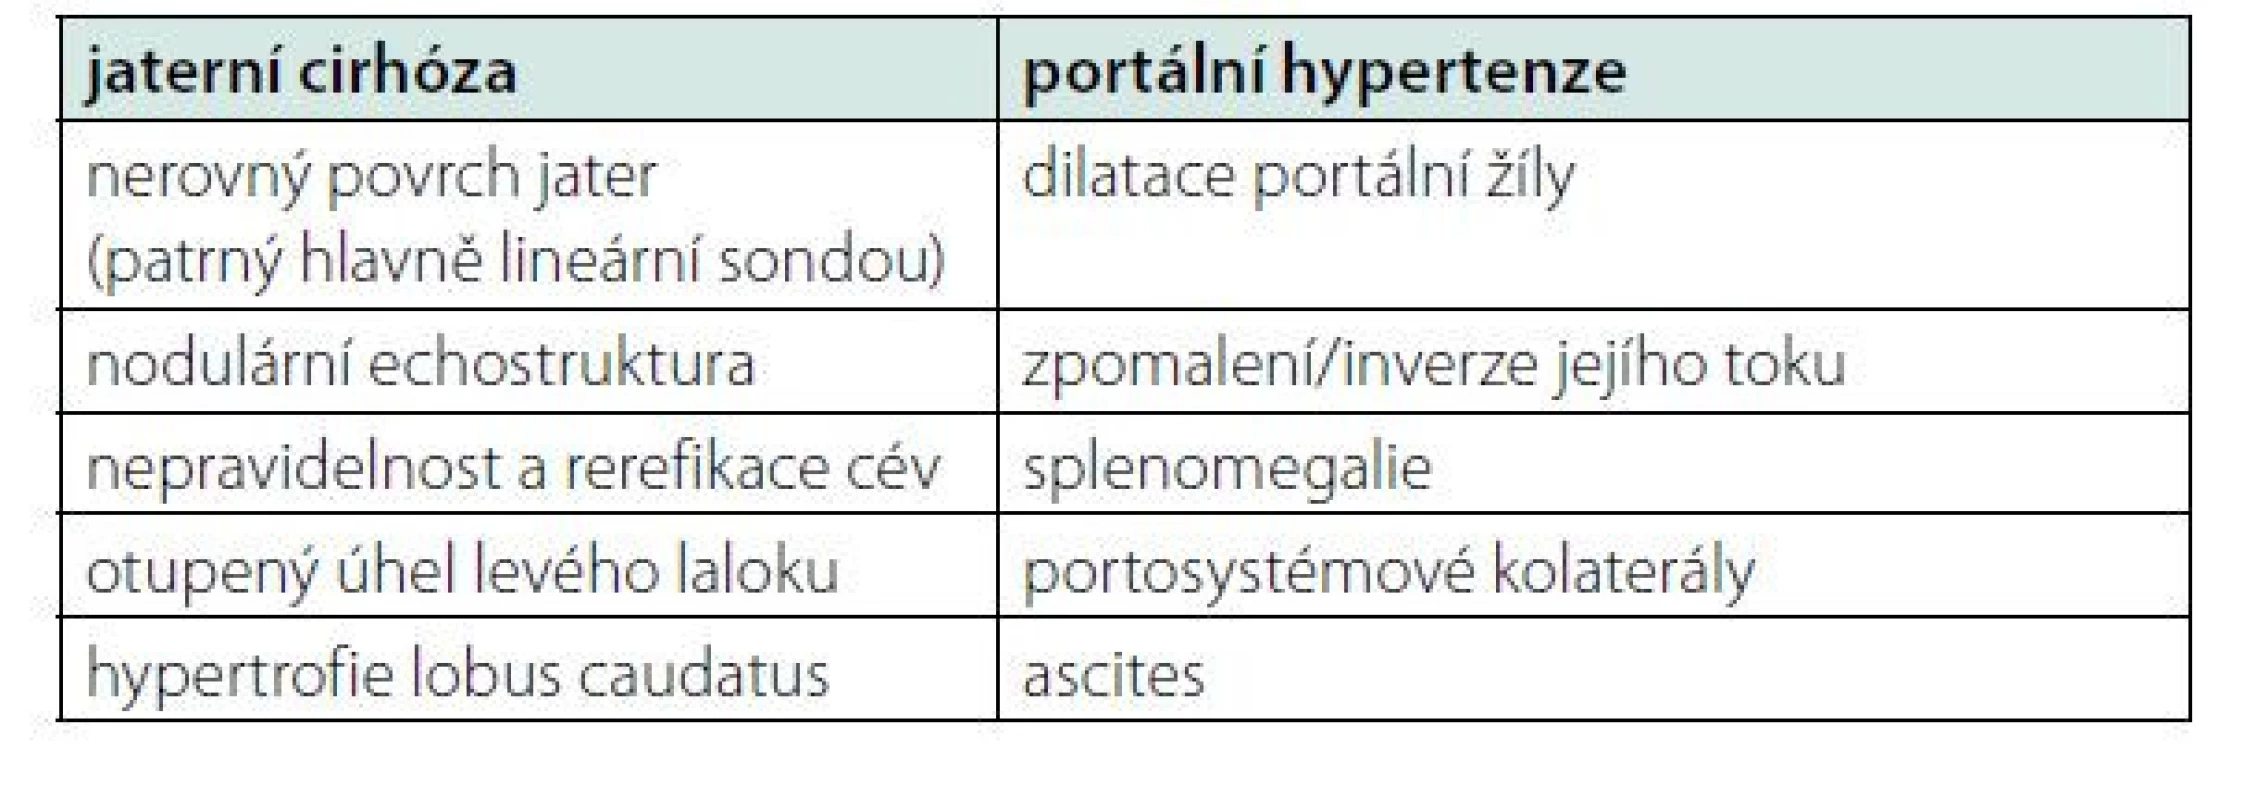 Sonografické známky jaterní cirhózy a portální hypertenze